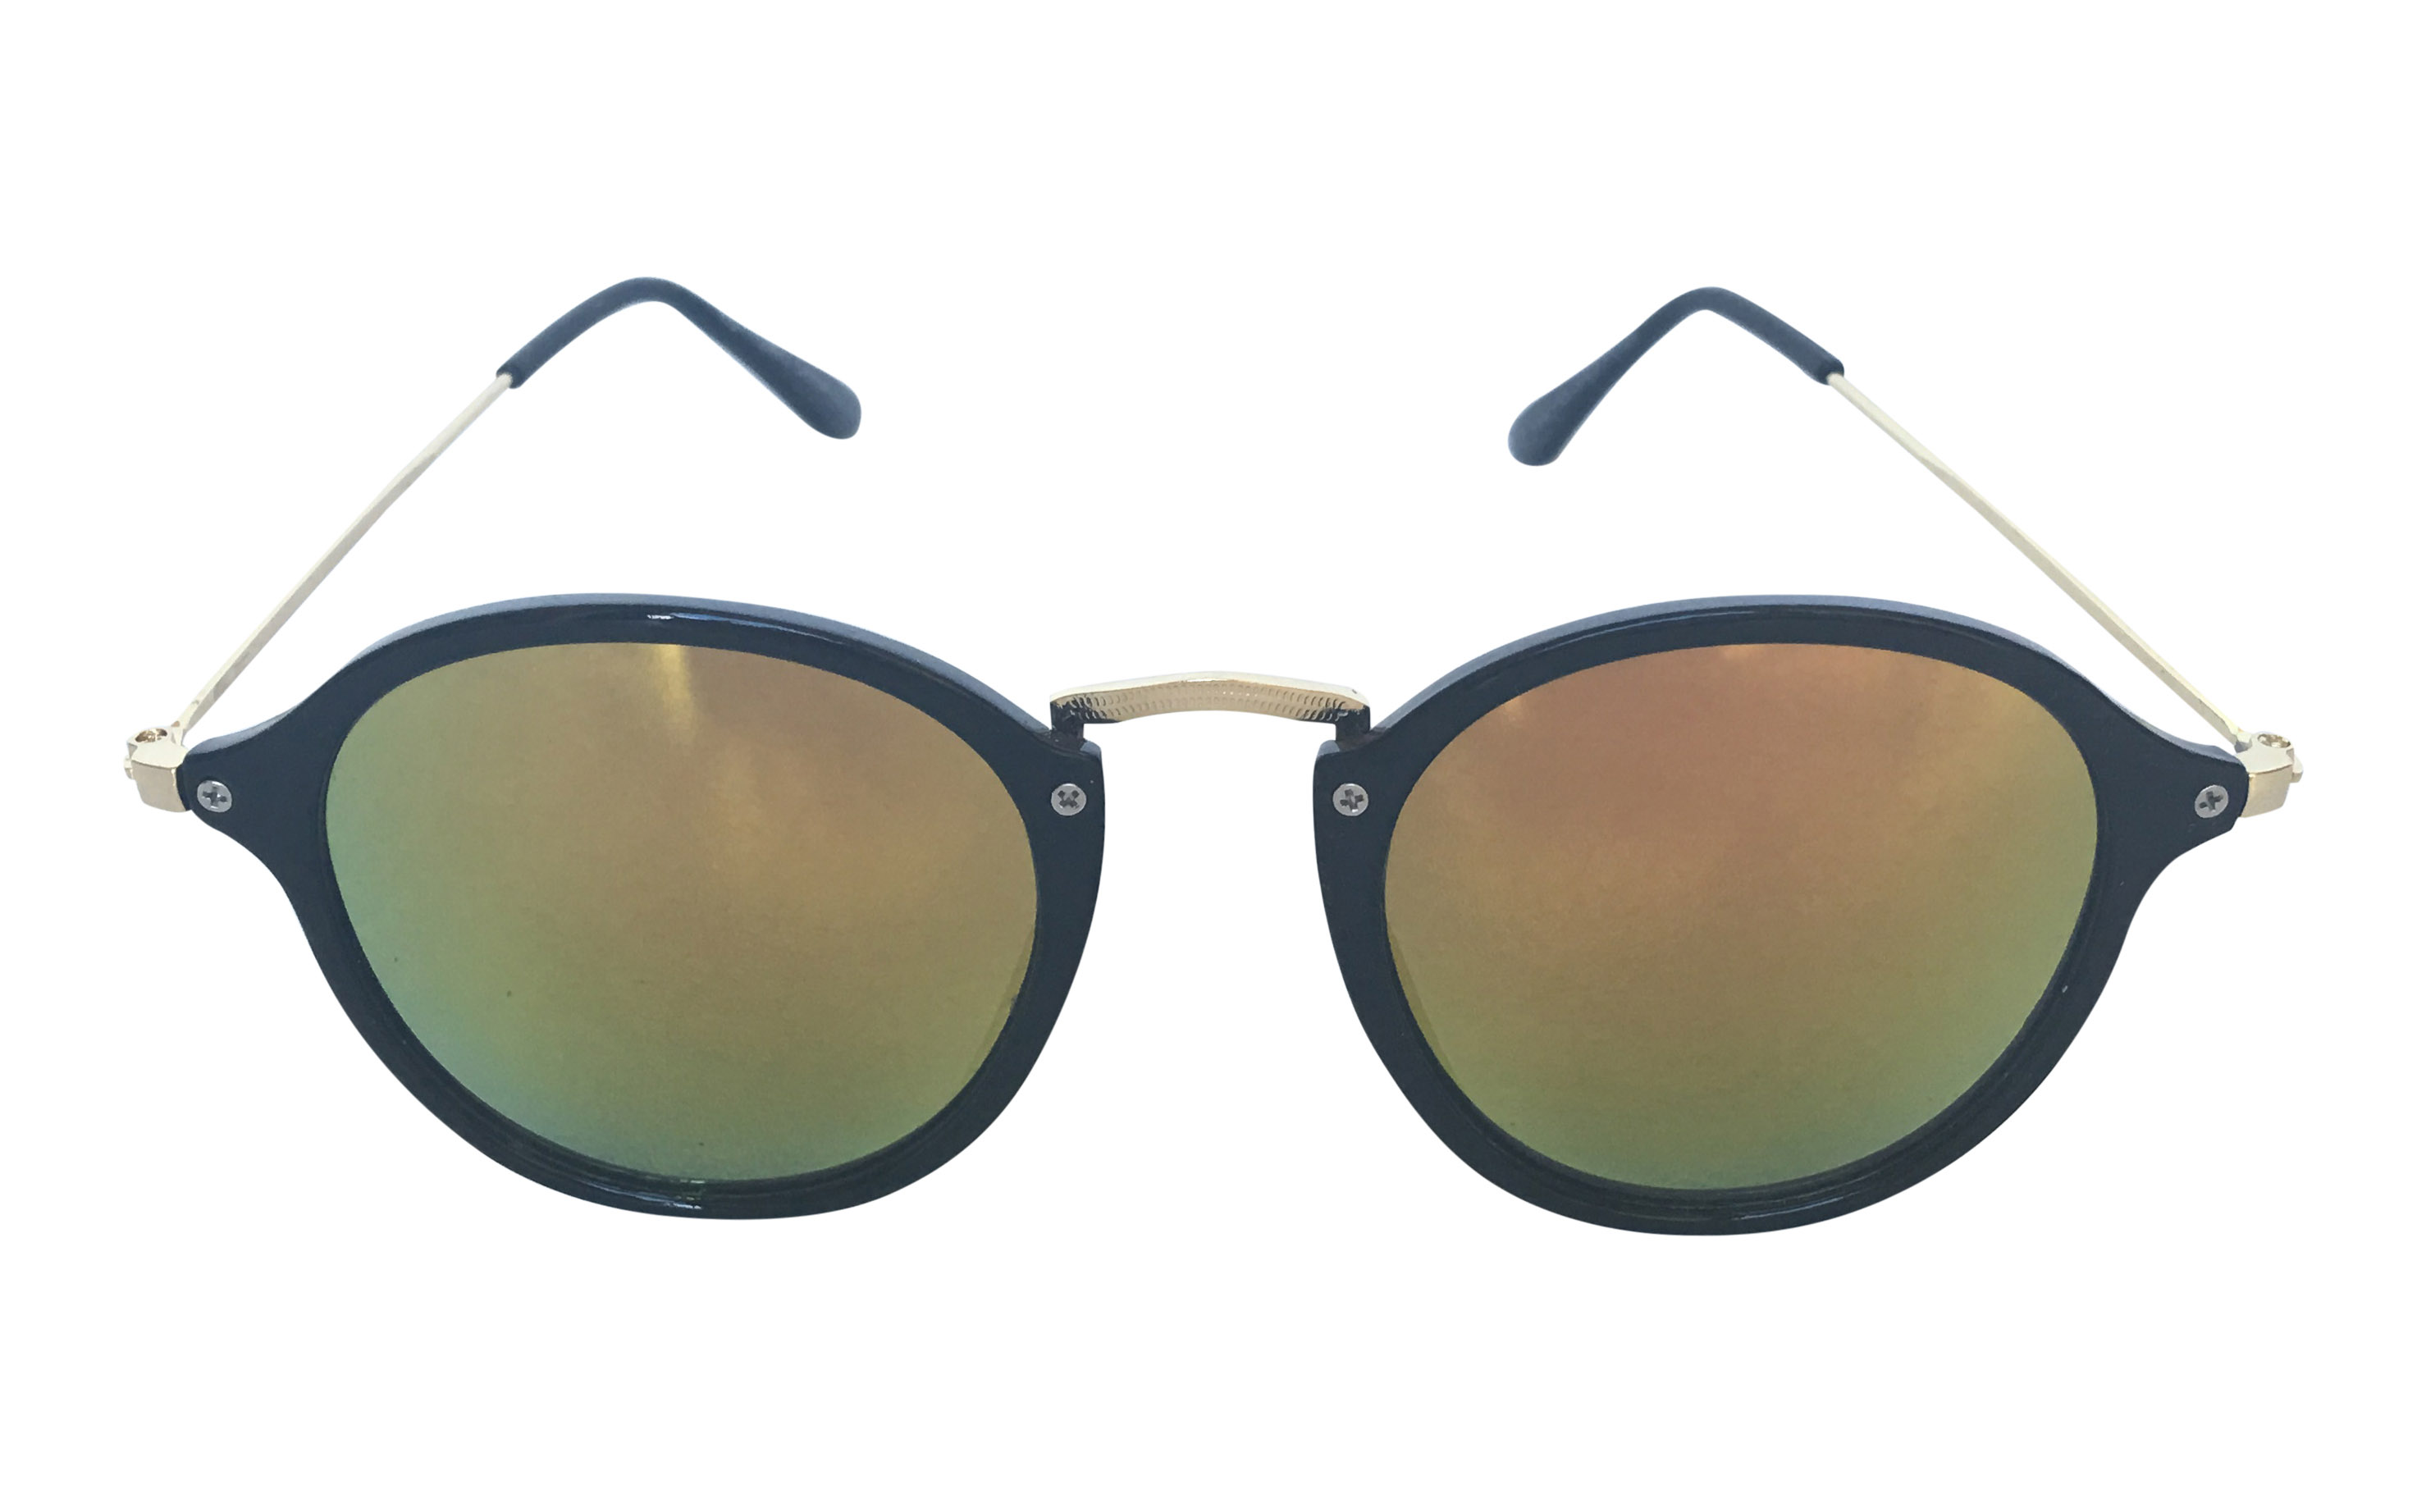 Lækker moderigtig solbrille i rundt design - Design nr. 3301